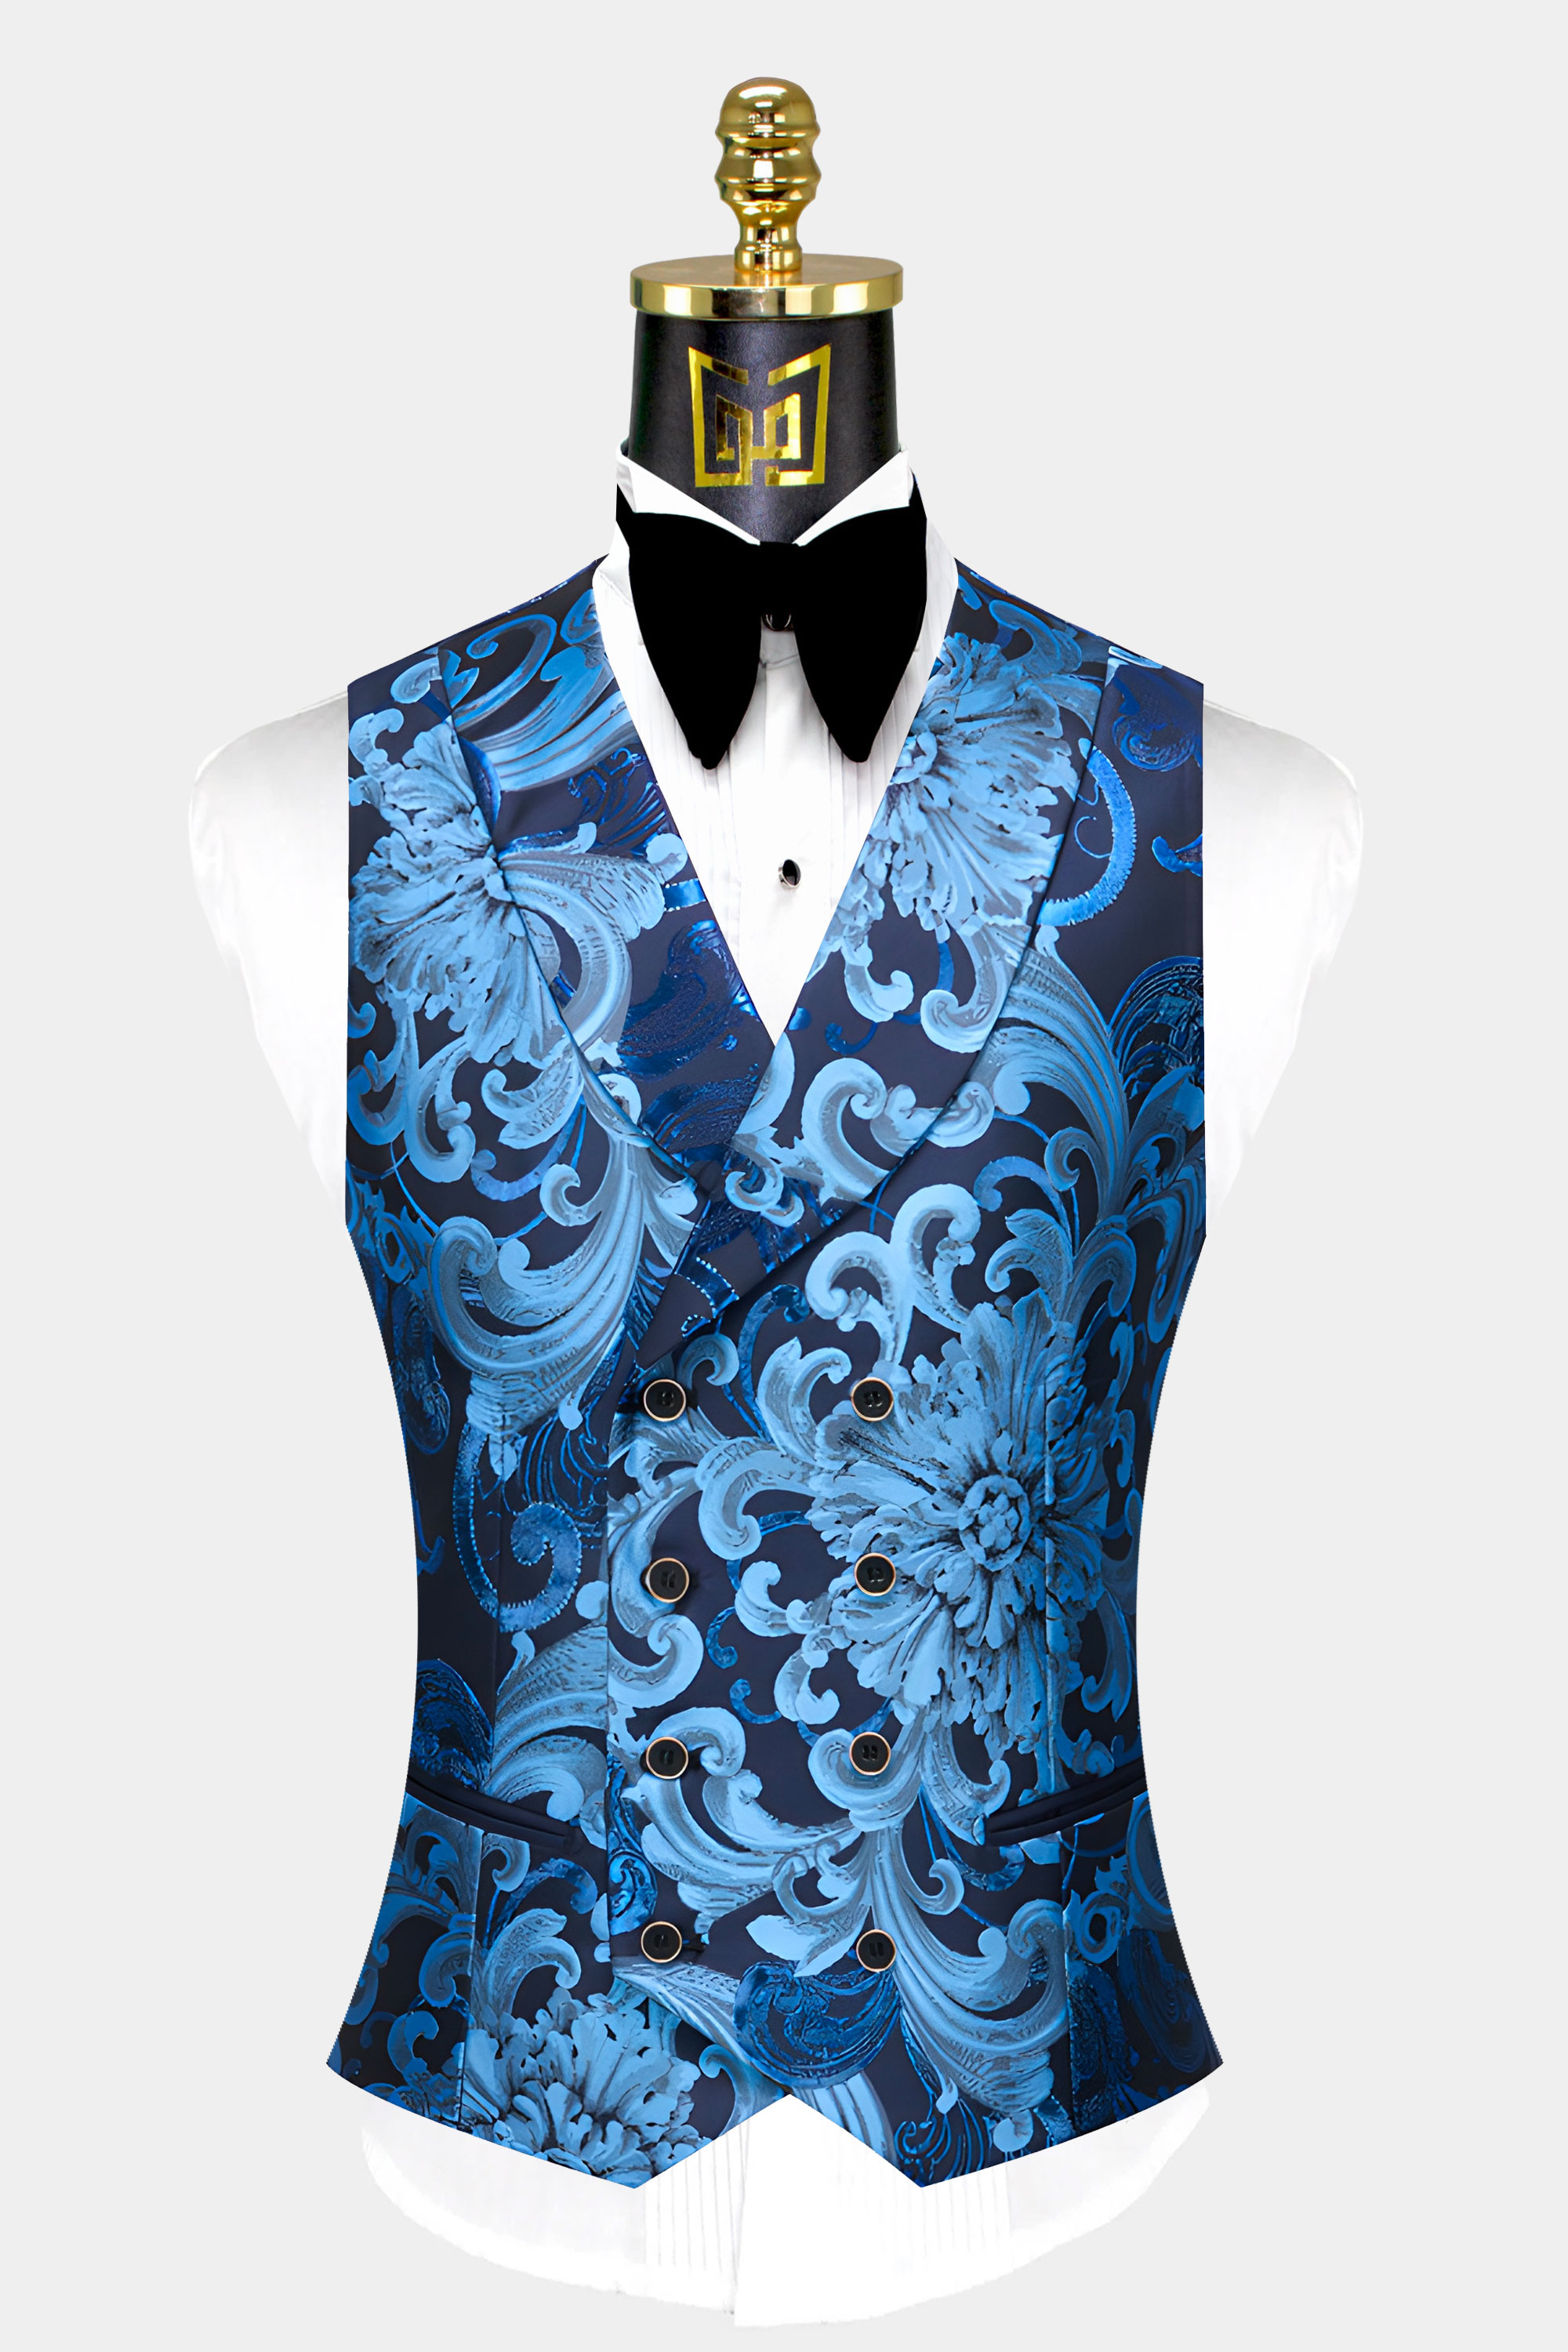 Men's Blue Floral Suit - 3 Piece | Gentleman's Guru